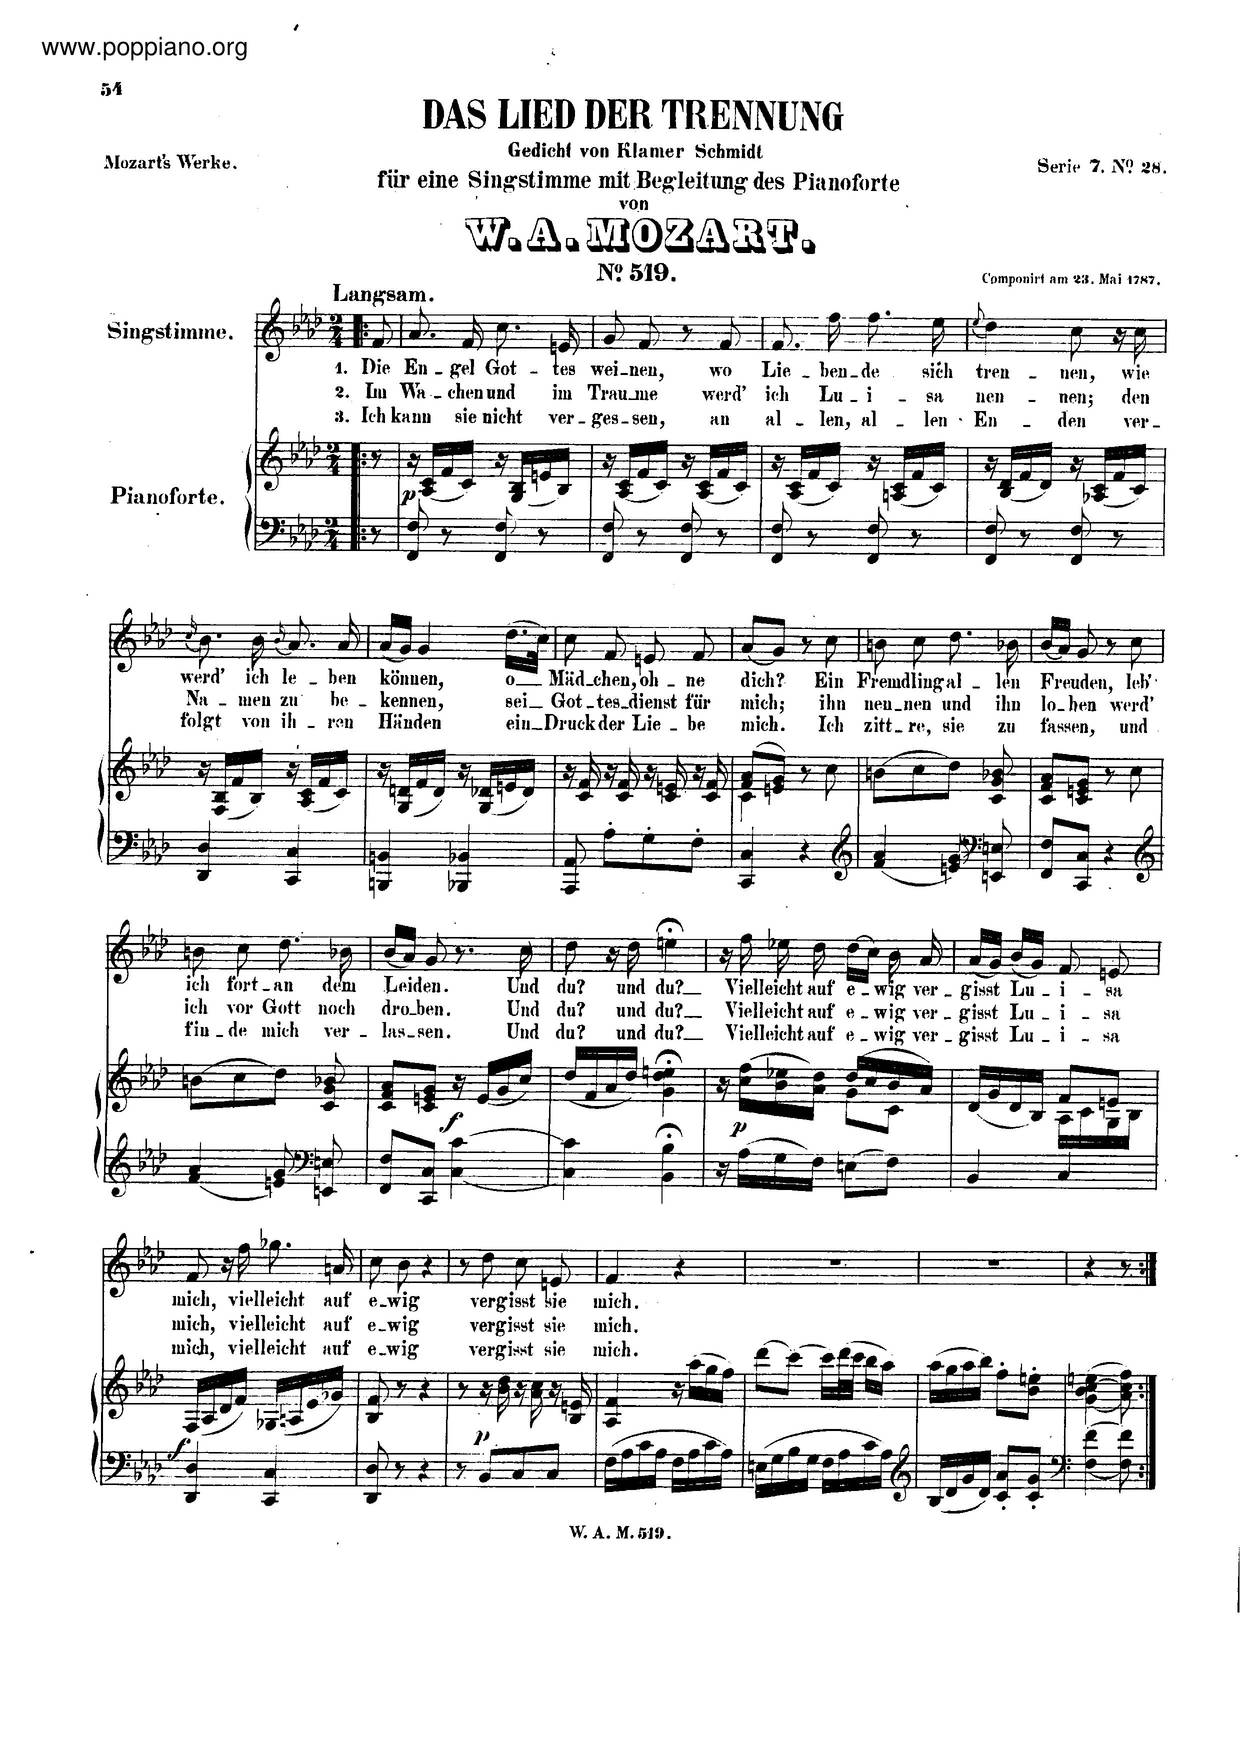 Das Lied Der Trennung, K. 519 Score